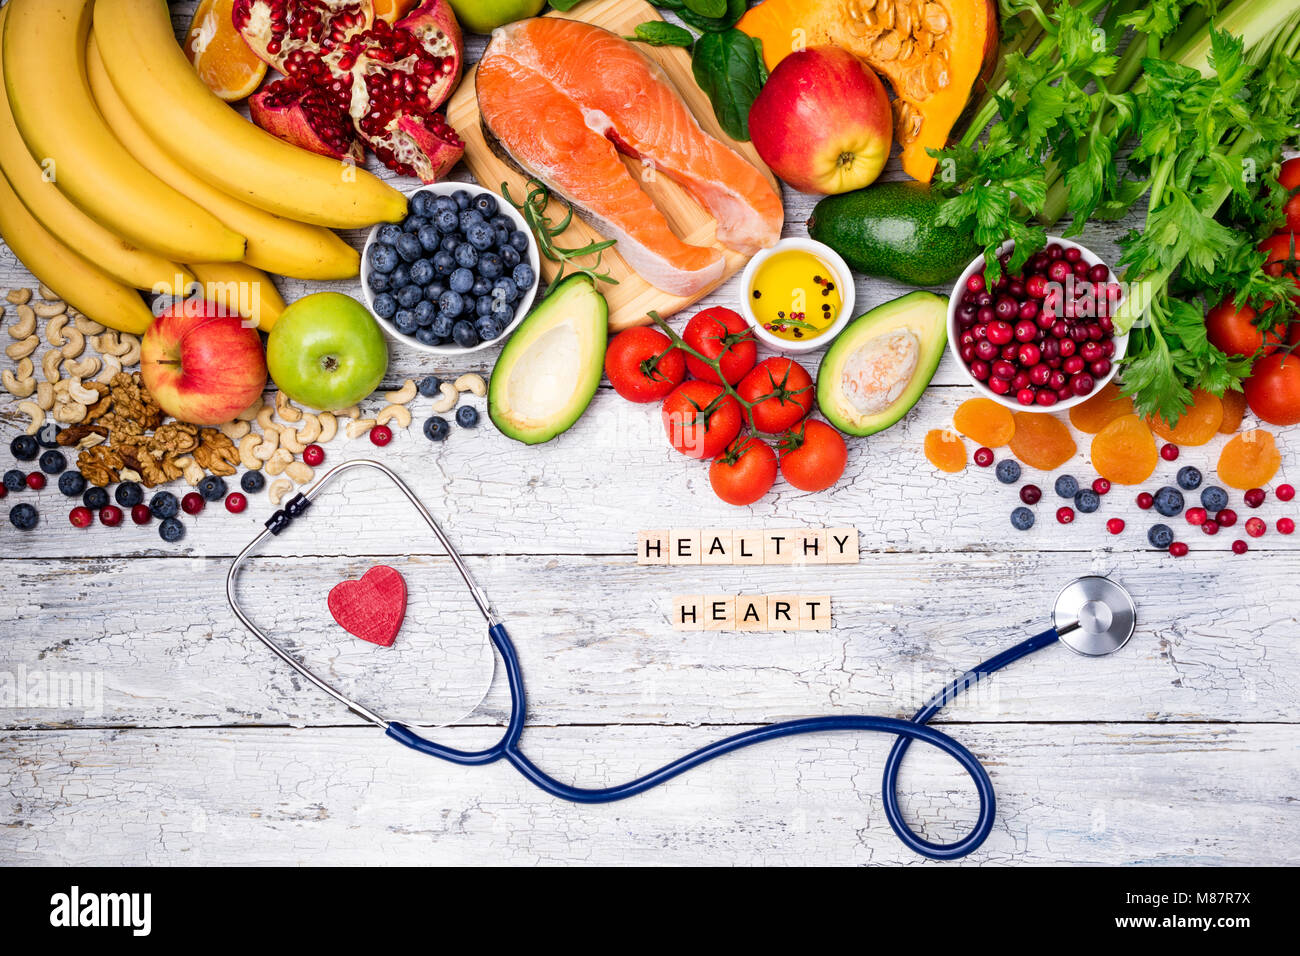 Sullo sfondo di un alimento sano per il cuore. Cibo sano, dieta e vita sana nozione. Vista superiore Foto Stock